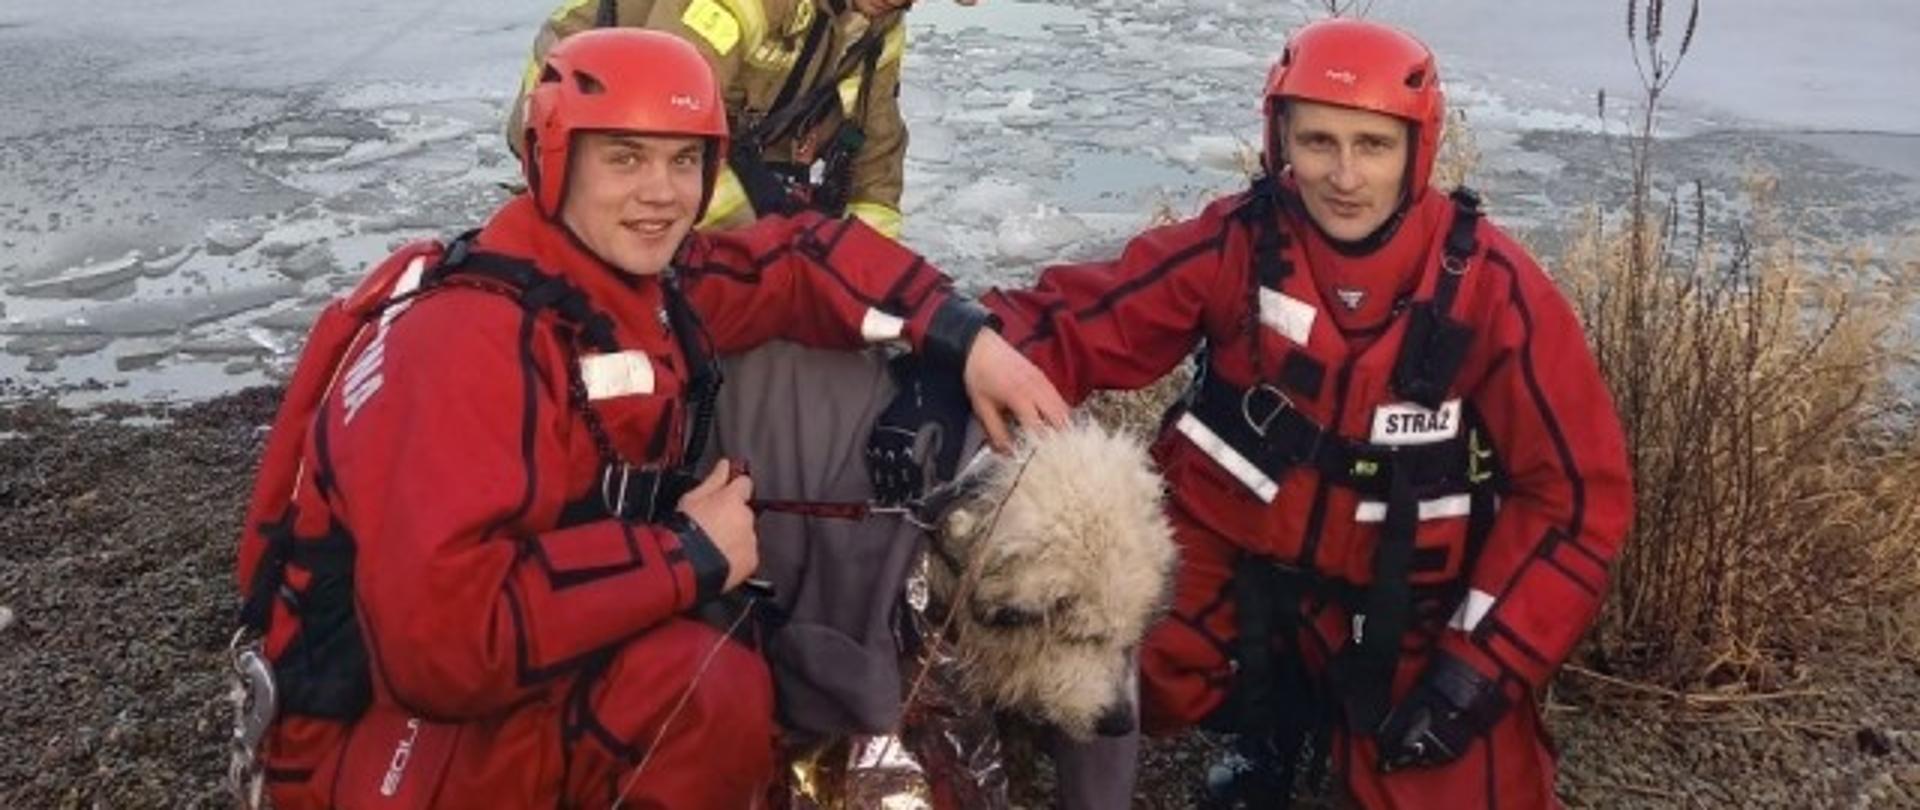 na zdjęciu widoczni trzej strażacy w umundurowaniu specjalnym, dwóch w ubraniach do pracy w wodzie oraz pies, który został ewakuowany z wody okryty kocem